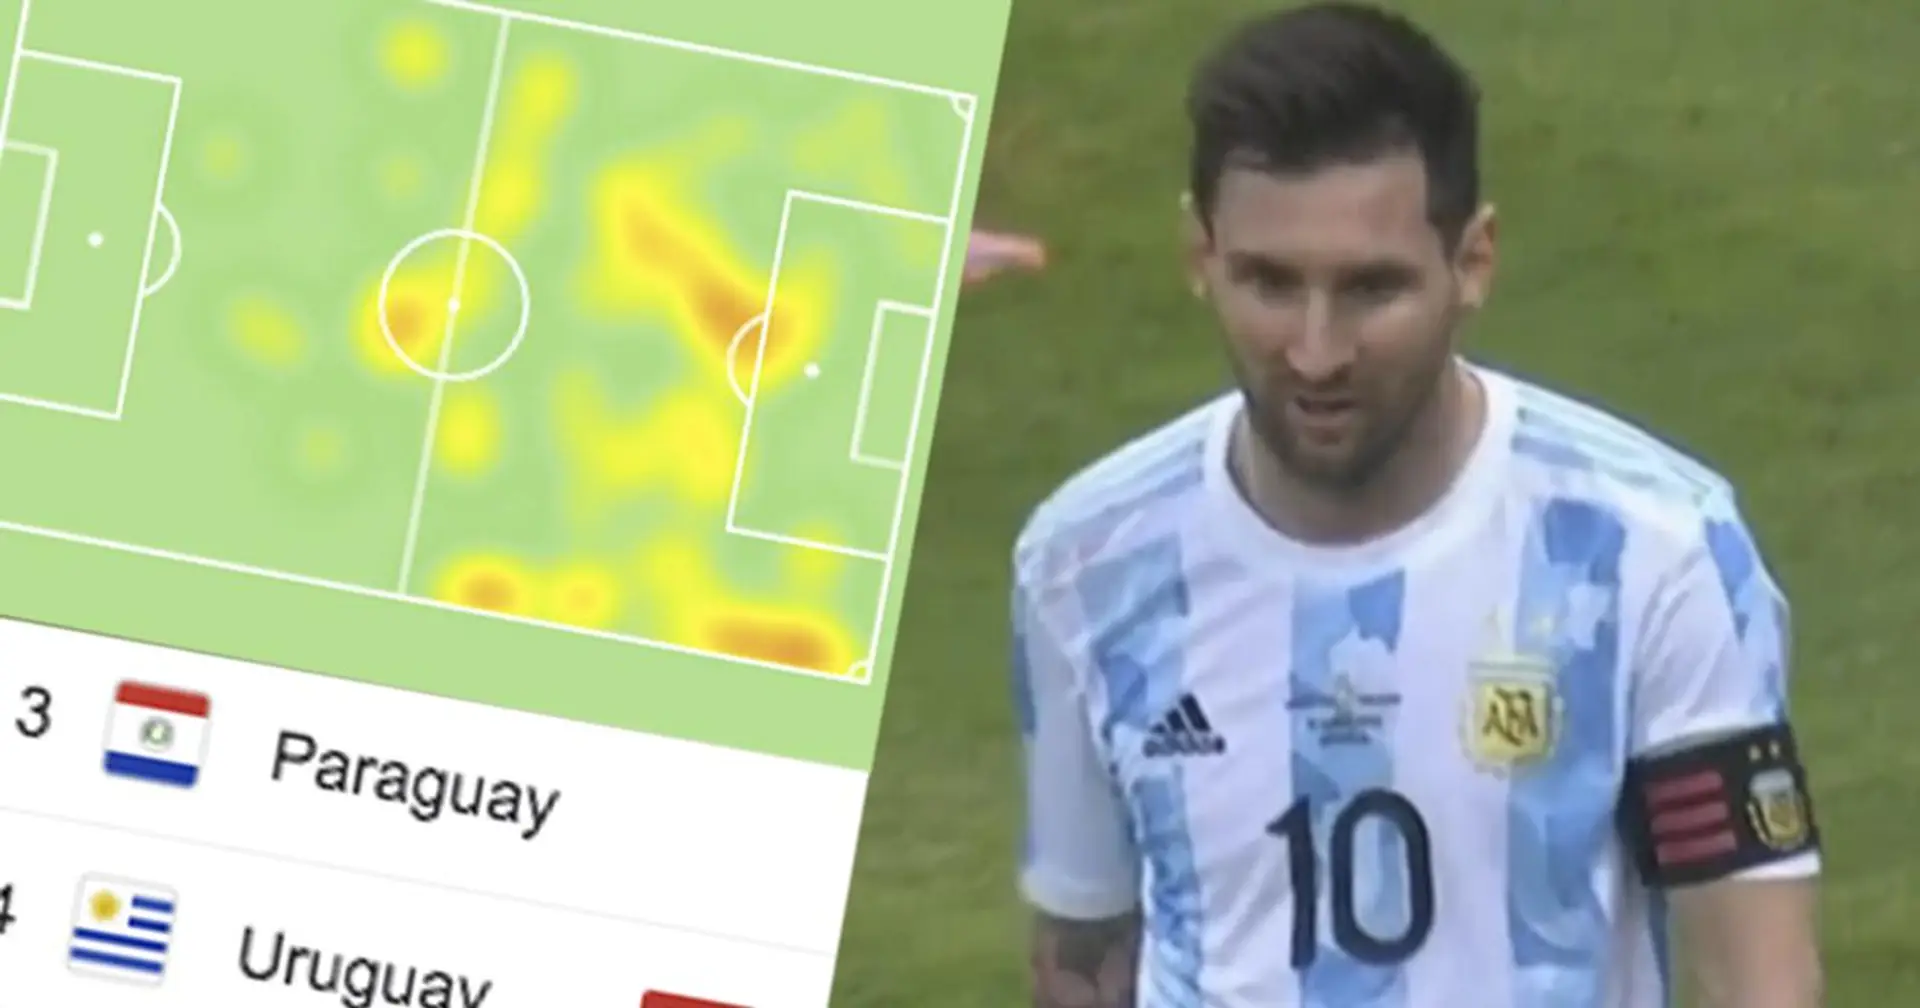 Statistiques de Messi, classement de groupe: 5 choses à savoir après la victoire de l'Argentine sur l'Uruguay en Copa America